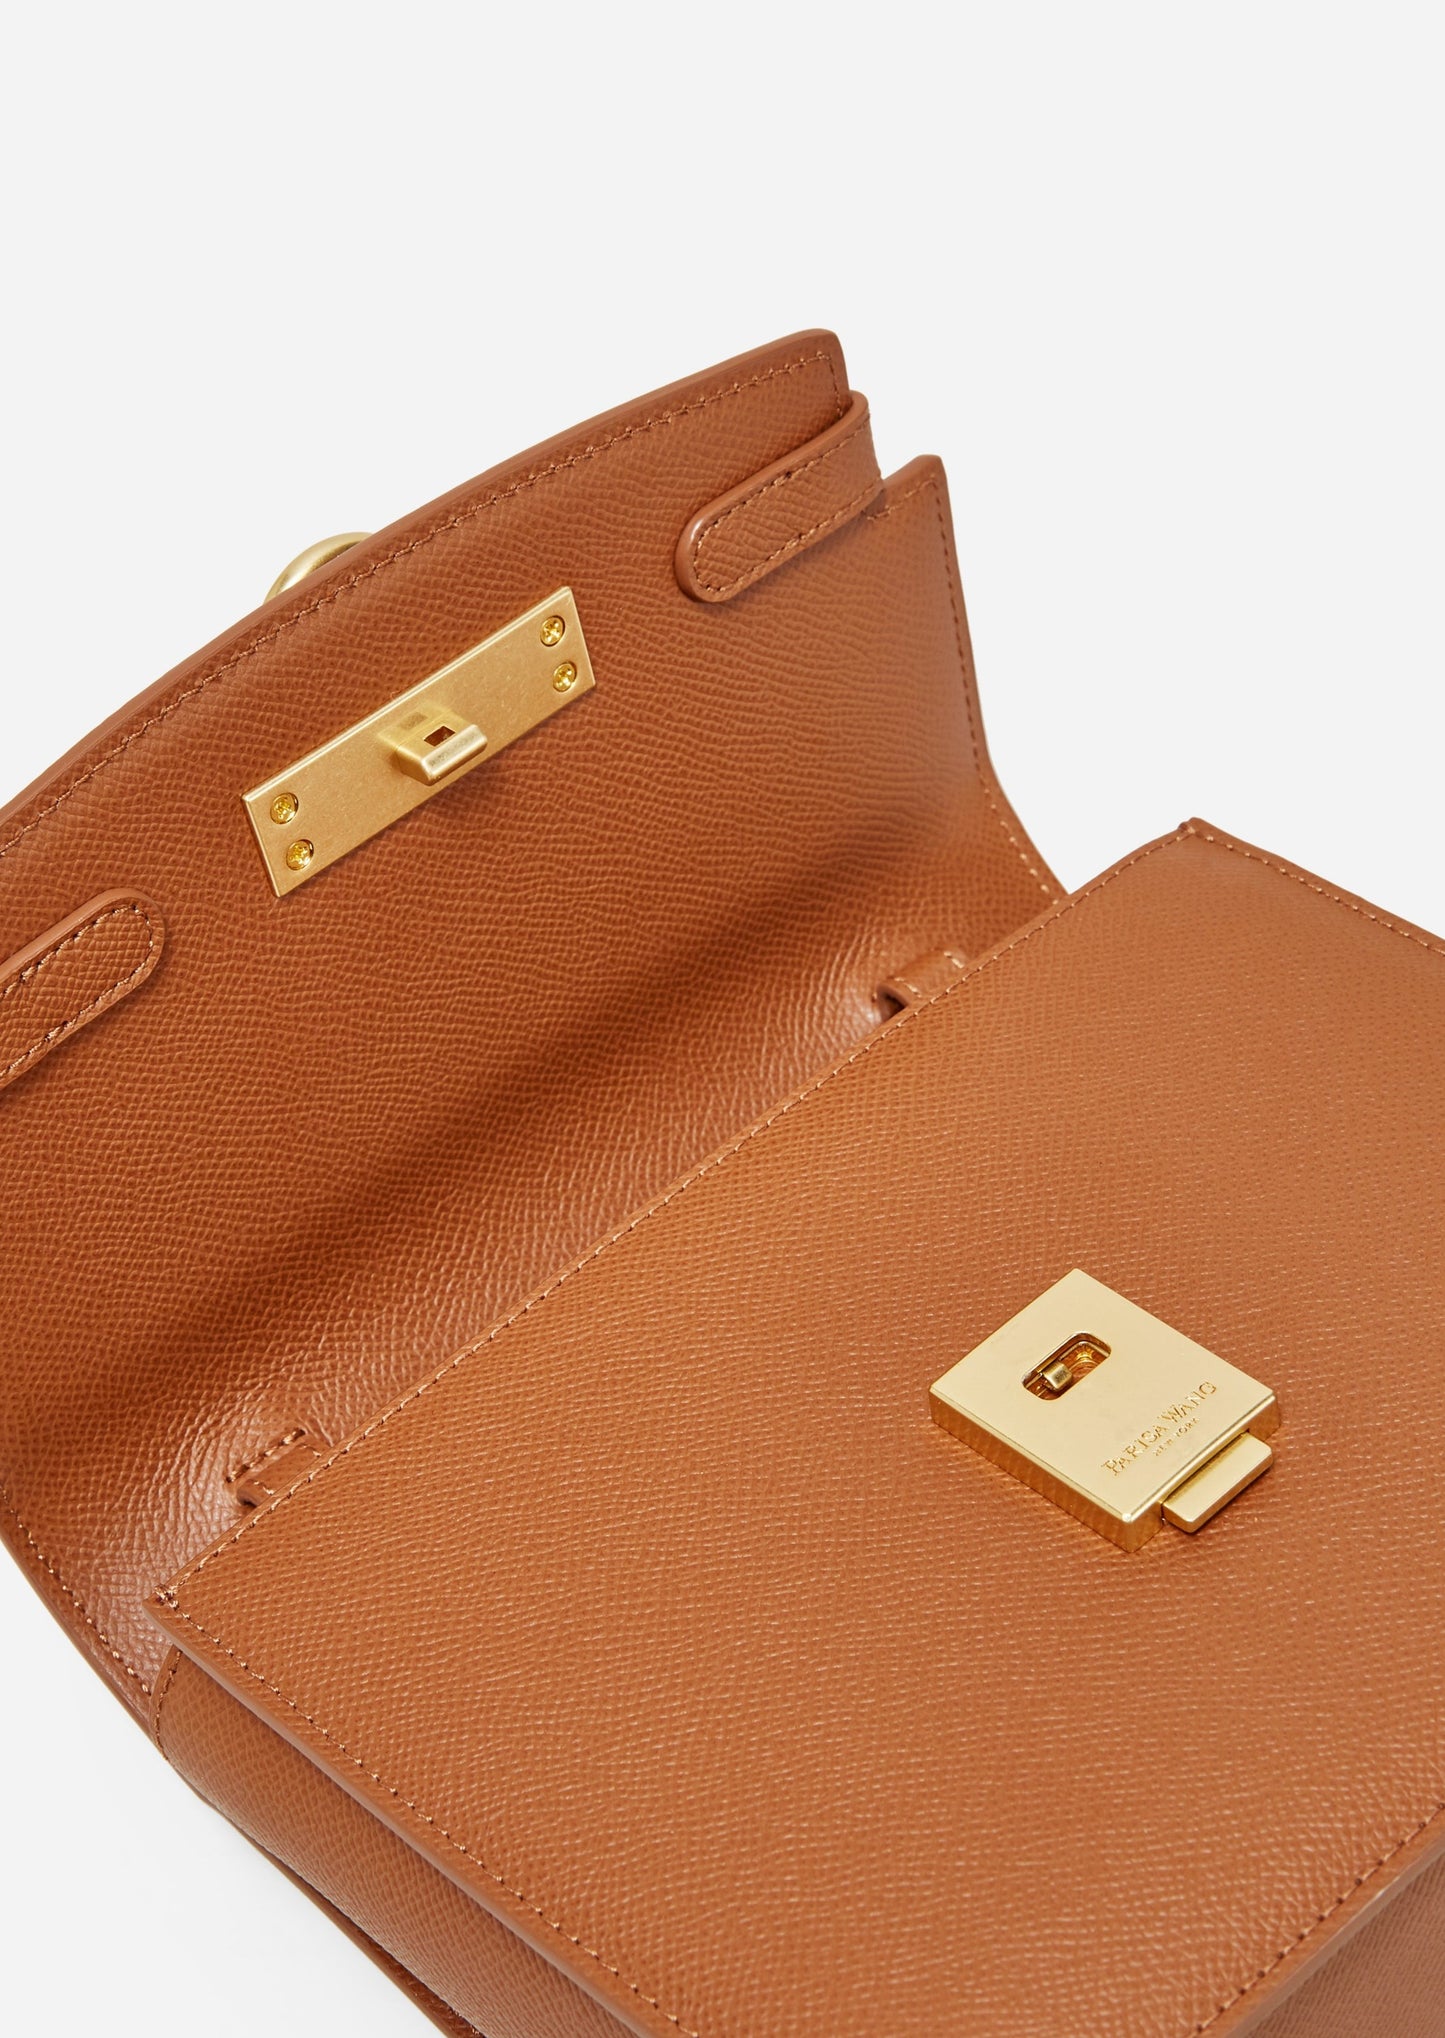 Unlocked Box Flap Bag in Brown | Parisa Wang